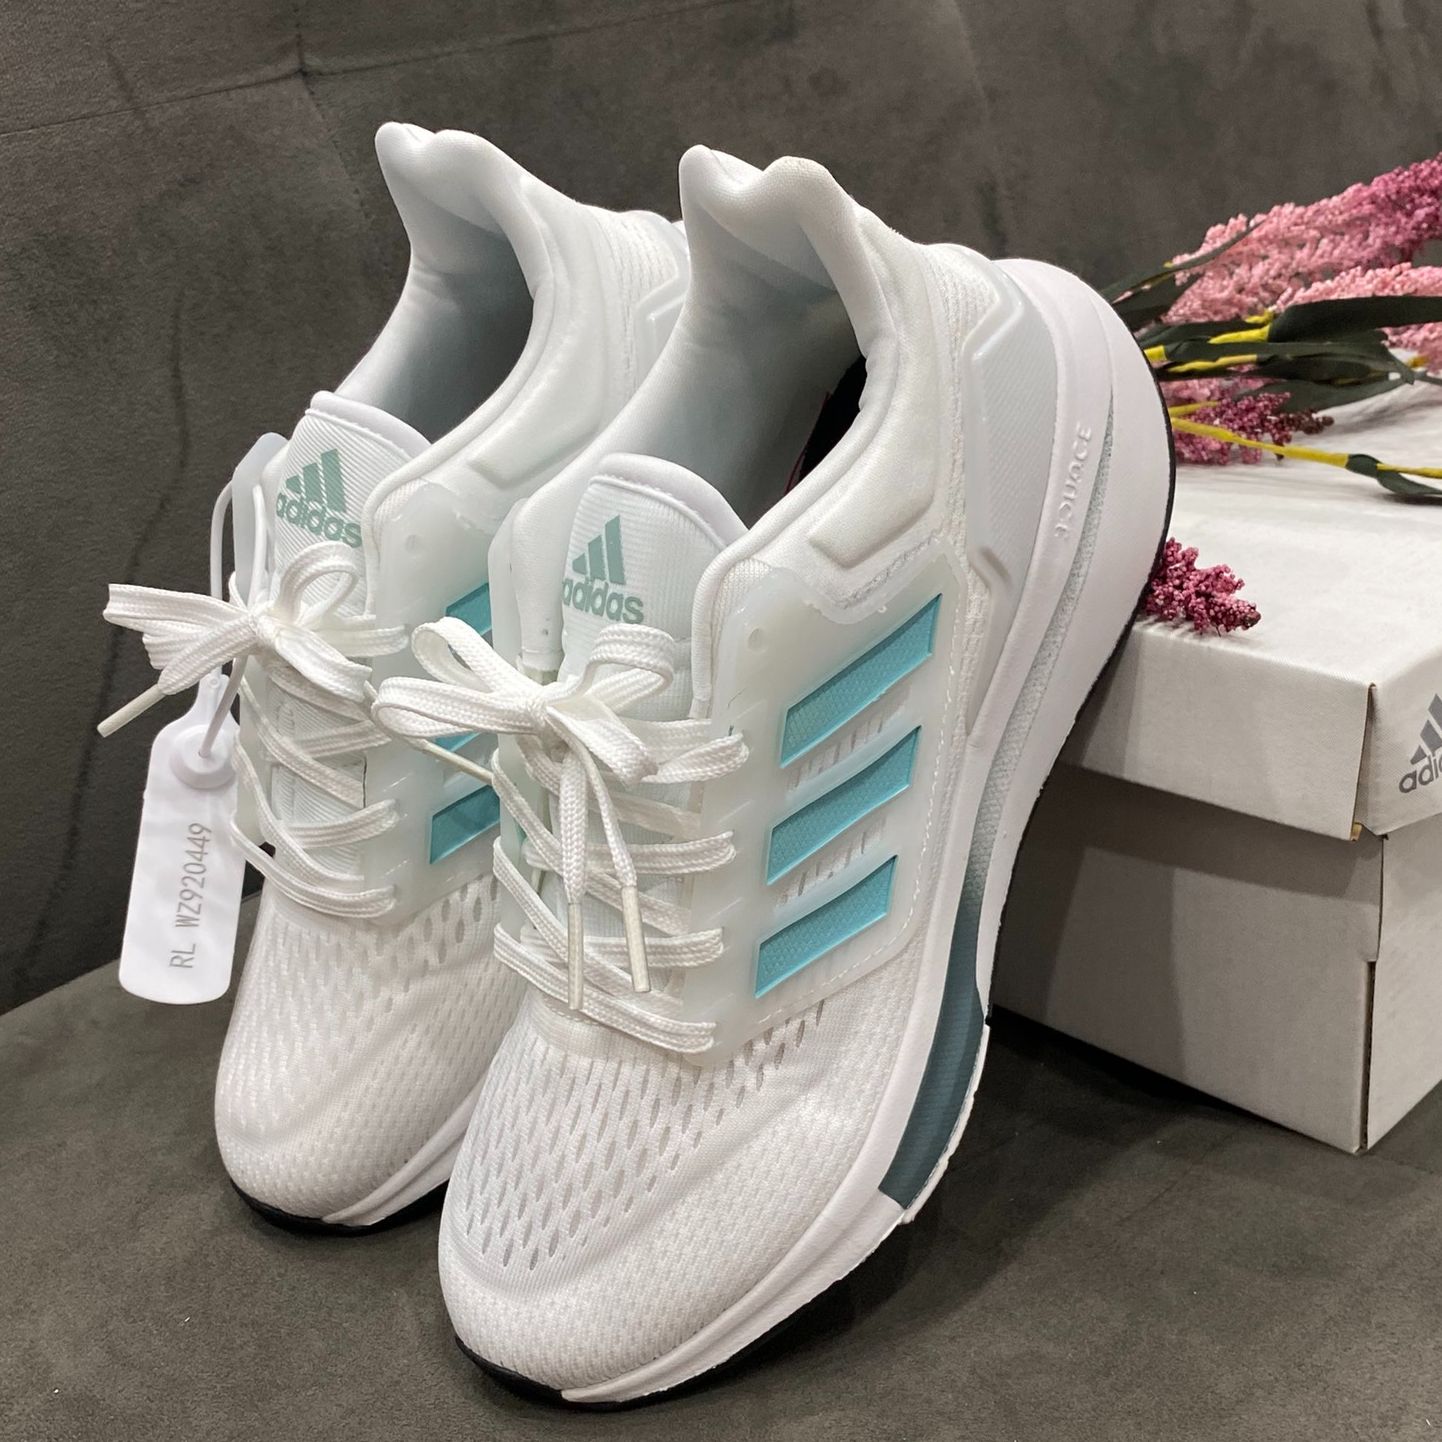 Giày thể thao nữ adidas EQT, Giày adidas trắng xanh ngọc mẫu mới 2022. hồng full box [pipistore]